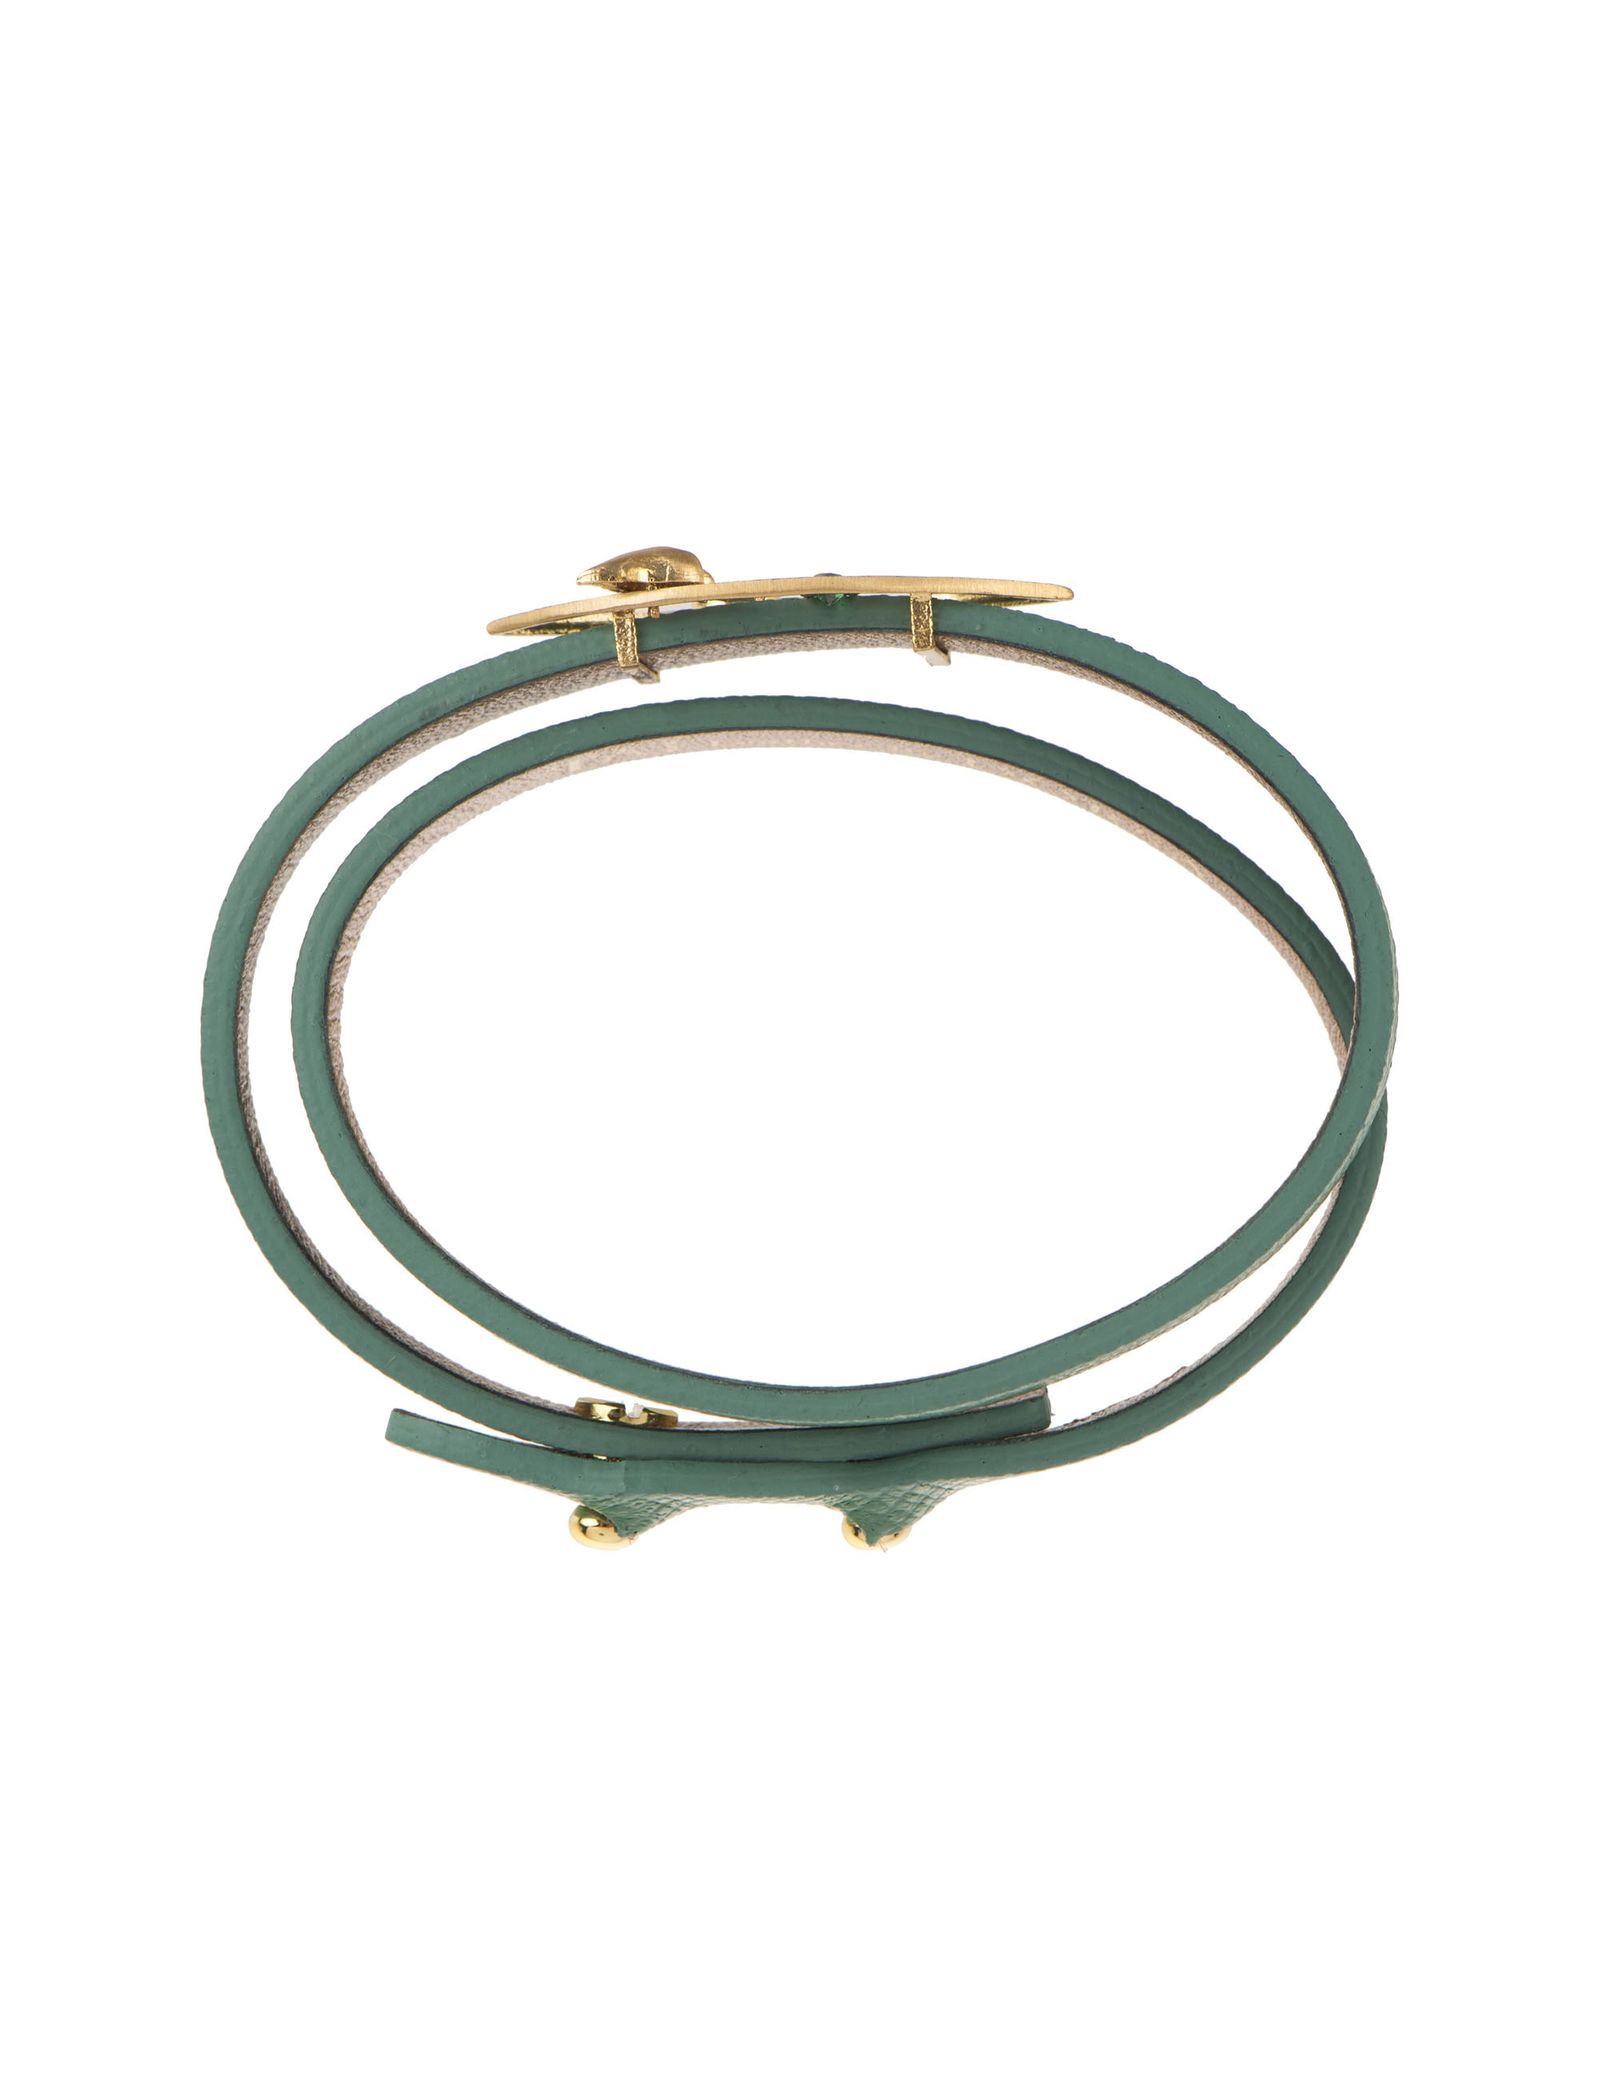 دستبند طلا زنانه - درسا - سبز آبي - 5